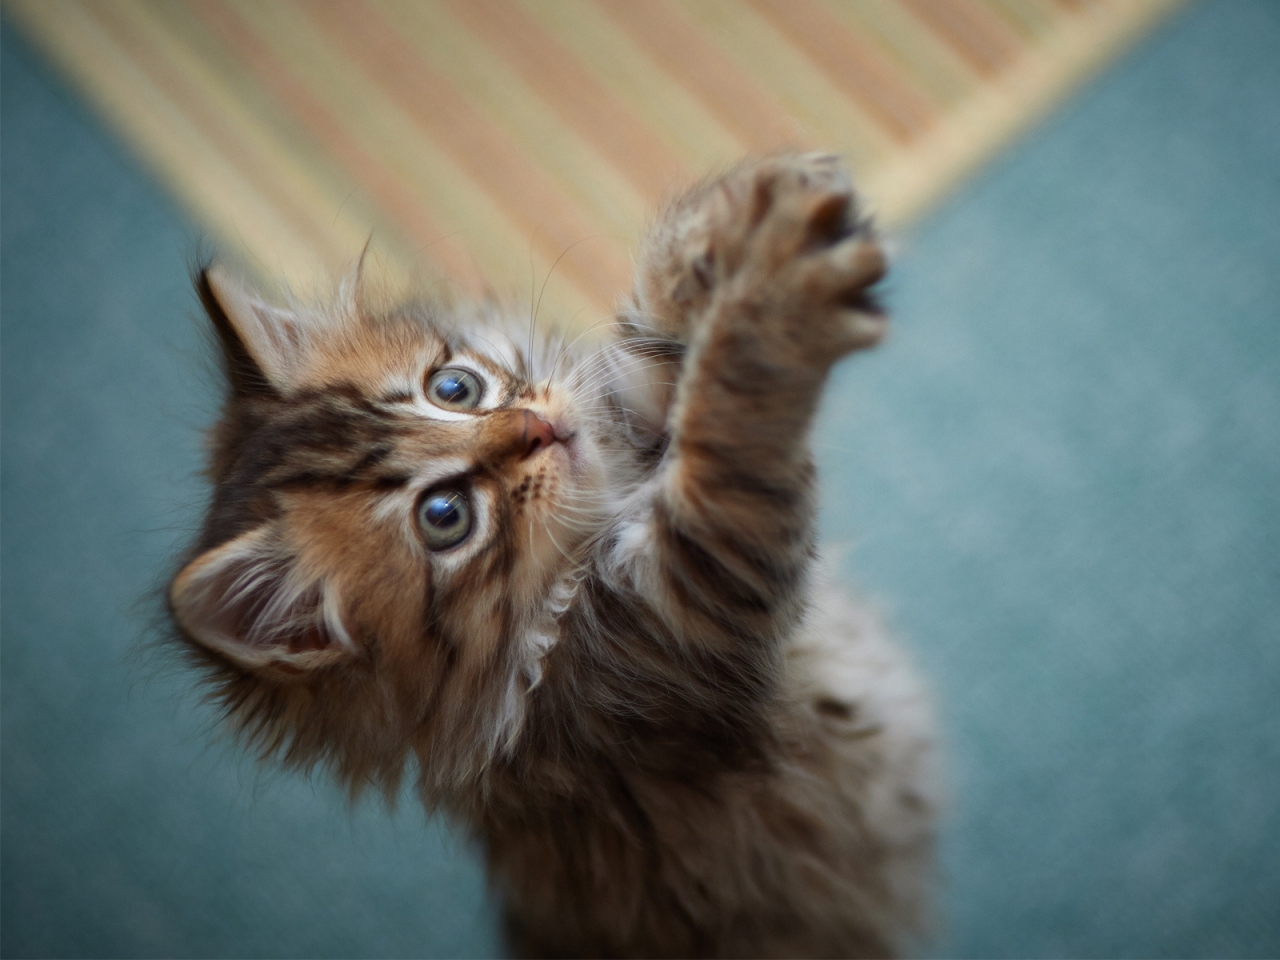 Fluffy Kitten for 1280 x 960 resolution